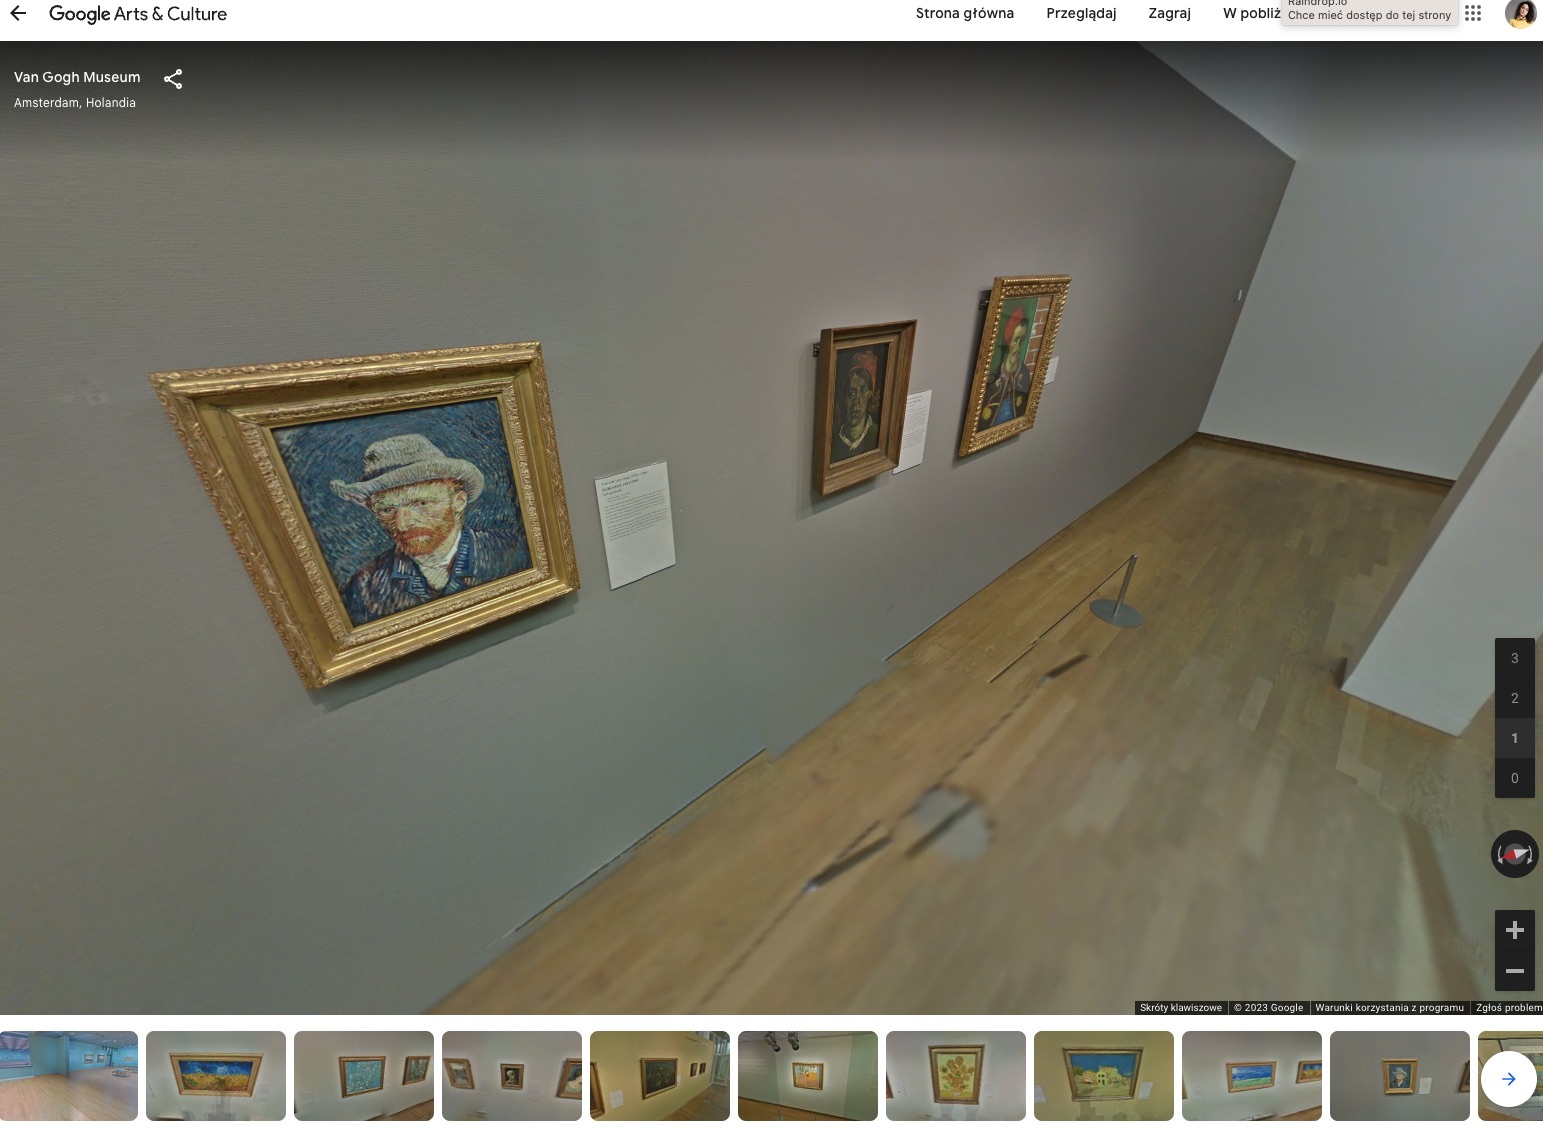 Cyfrowa wycieczka po muzeum Van Gogha za pośrednictwem aplikacji Google Arts & Culture